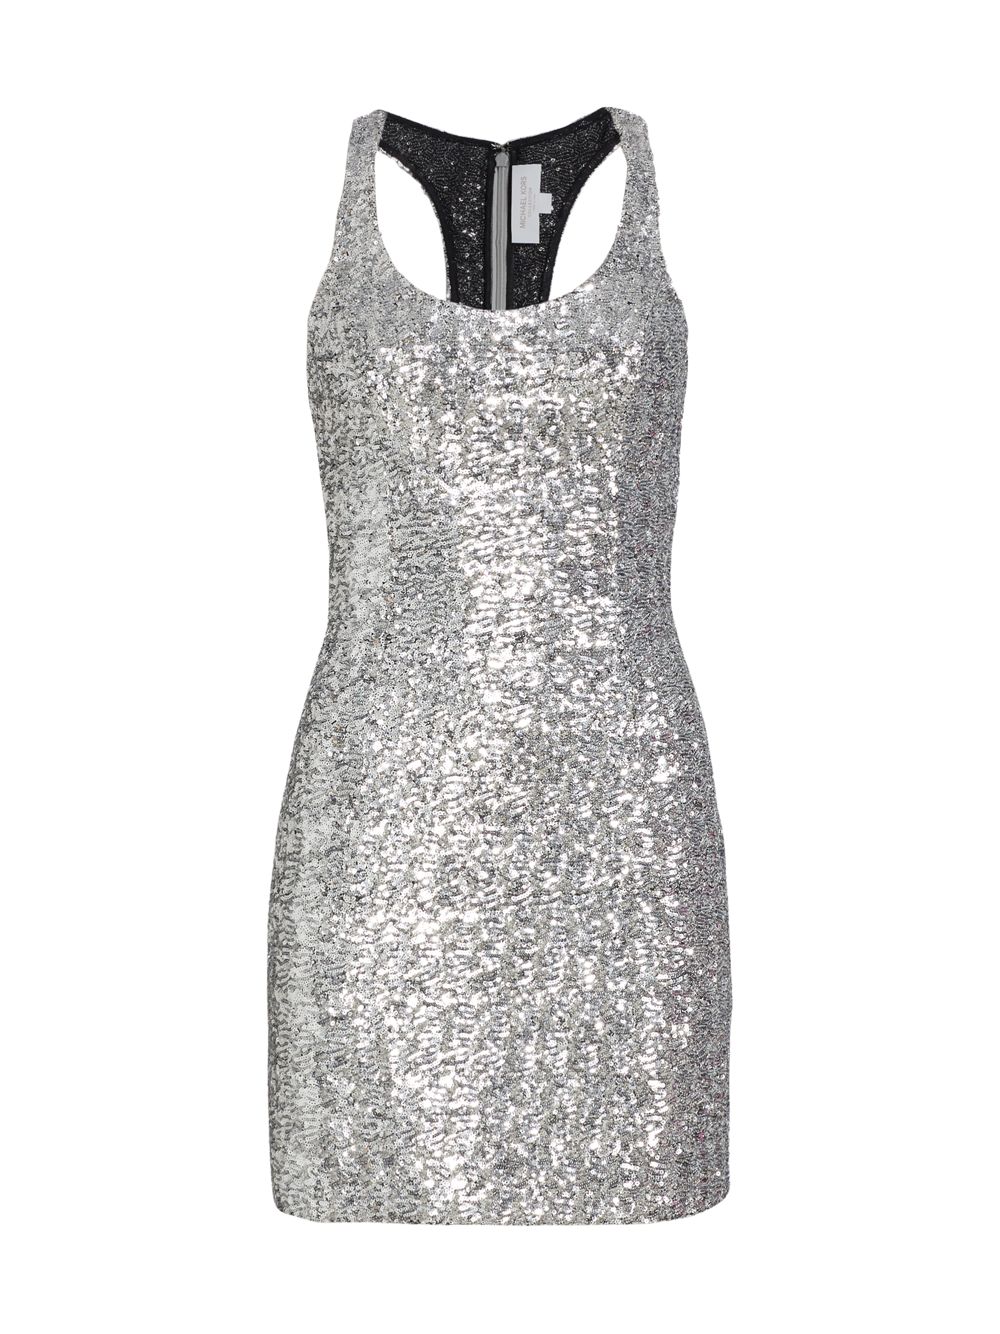 Мини-платье с пайетками Michael Kors Collection, серебряный однобортный пиджак джорджина с пайетками michael kors collection черный